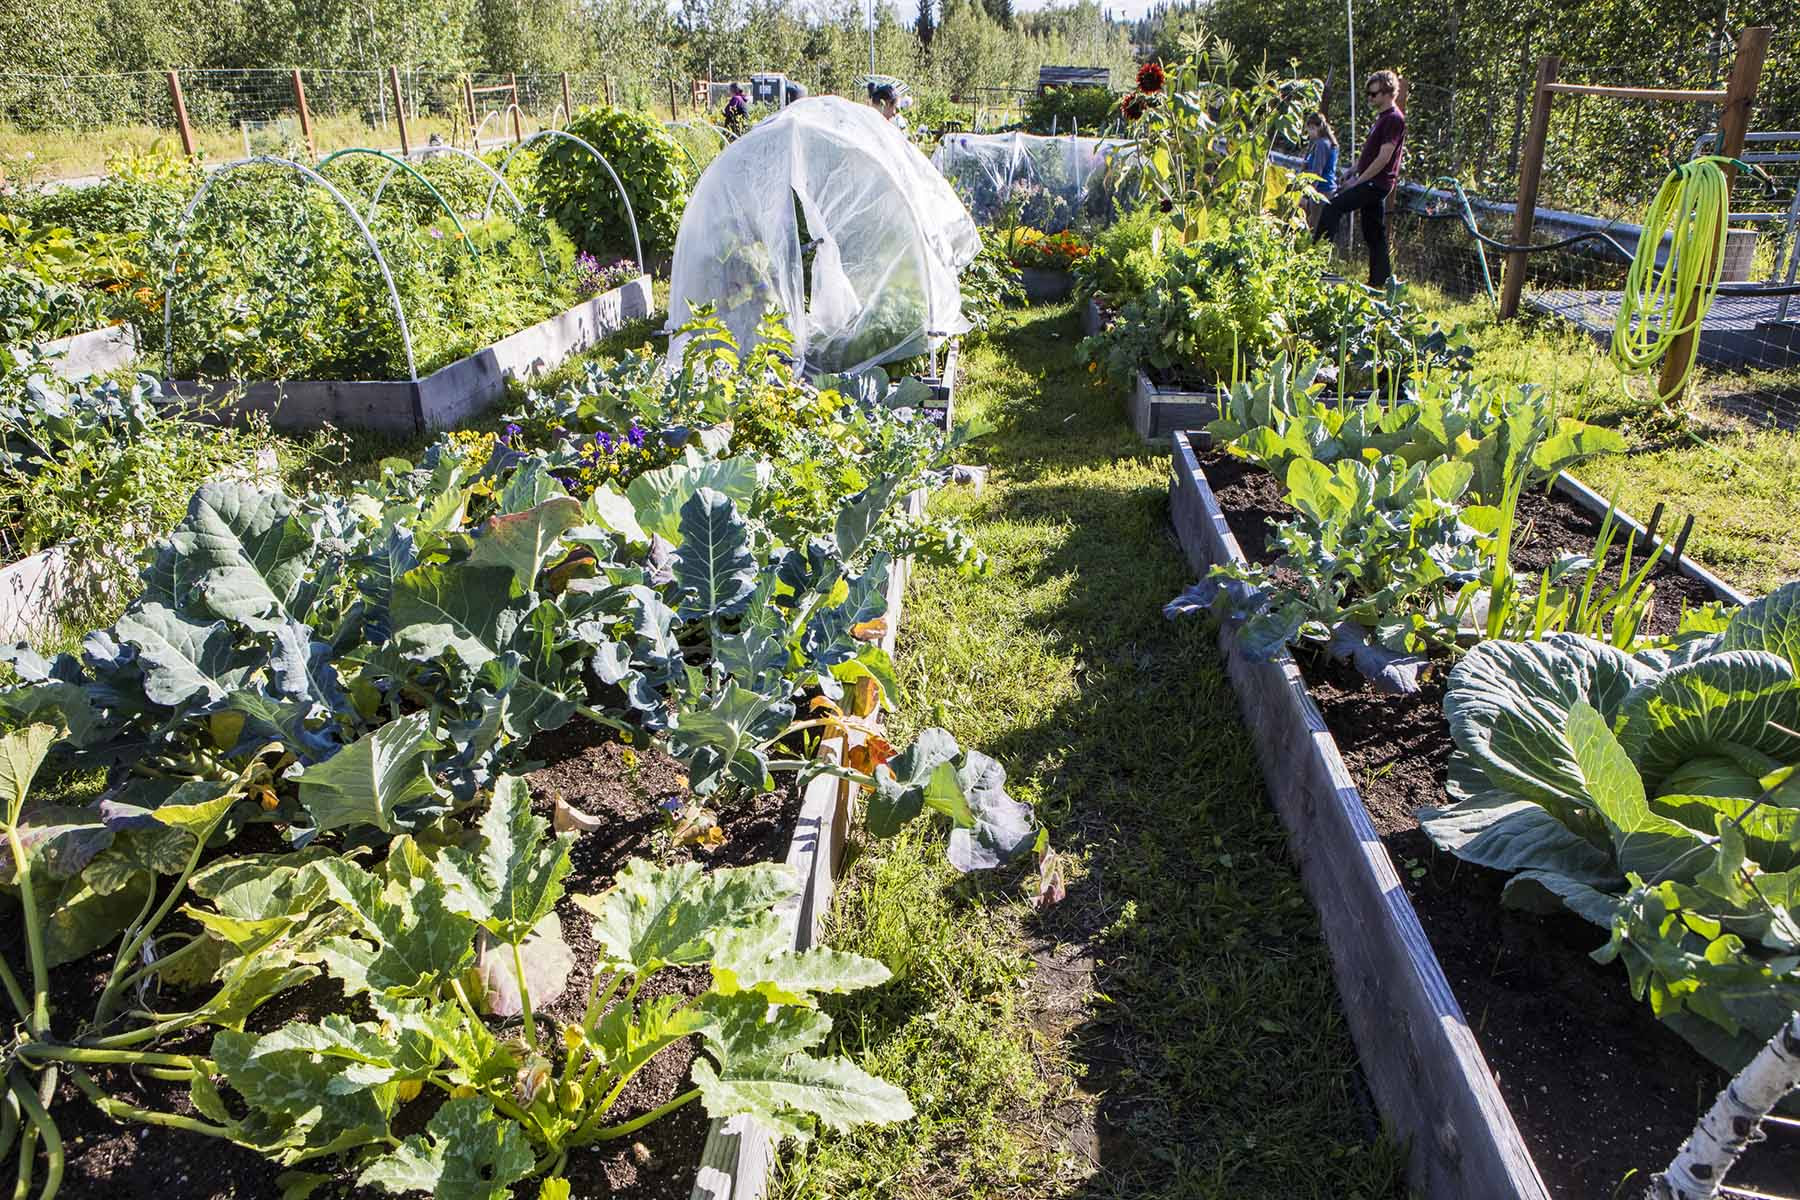 The UAF community garden full of vegetables